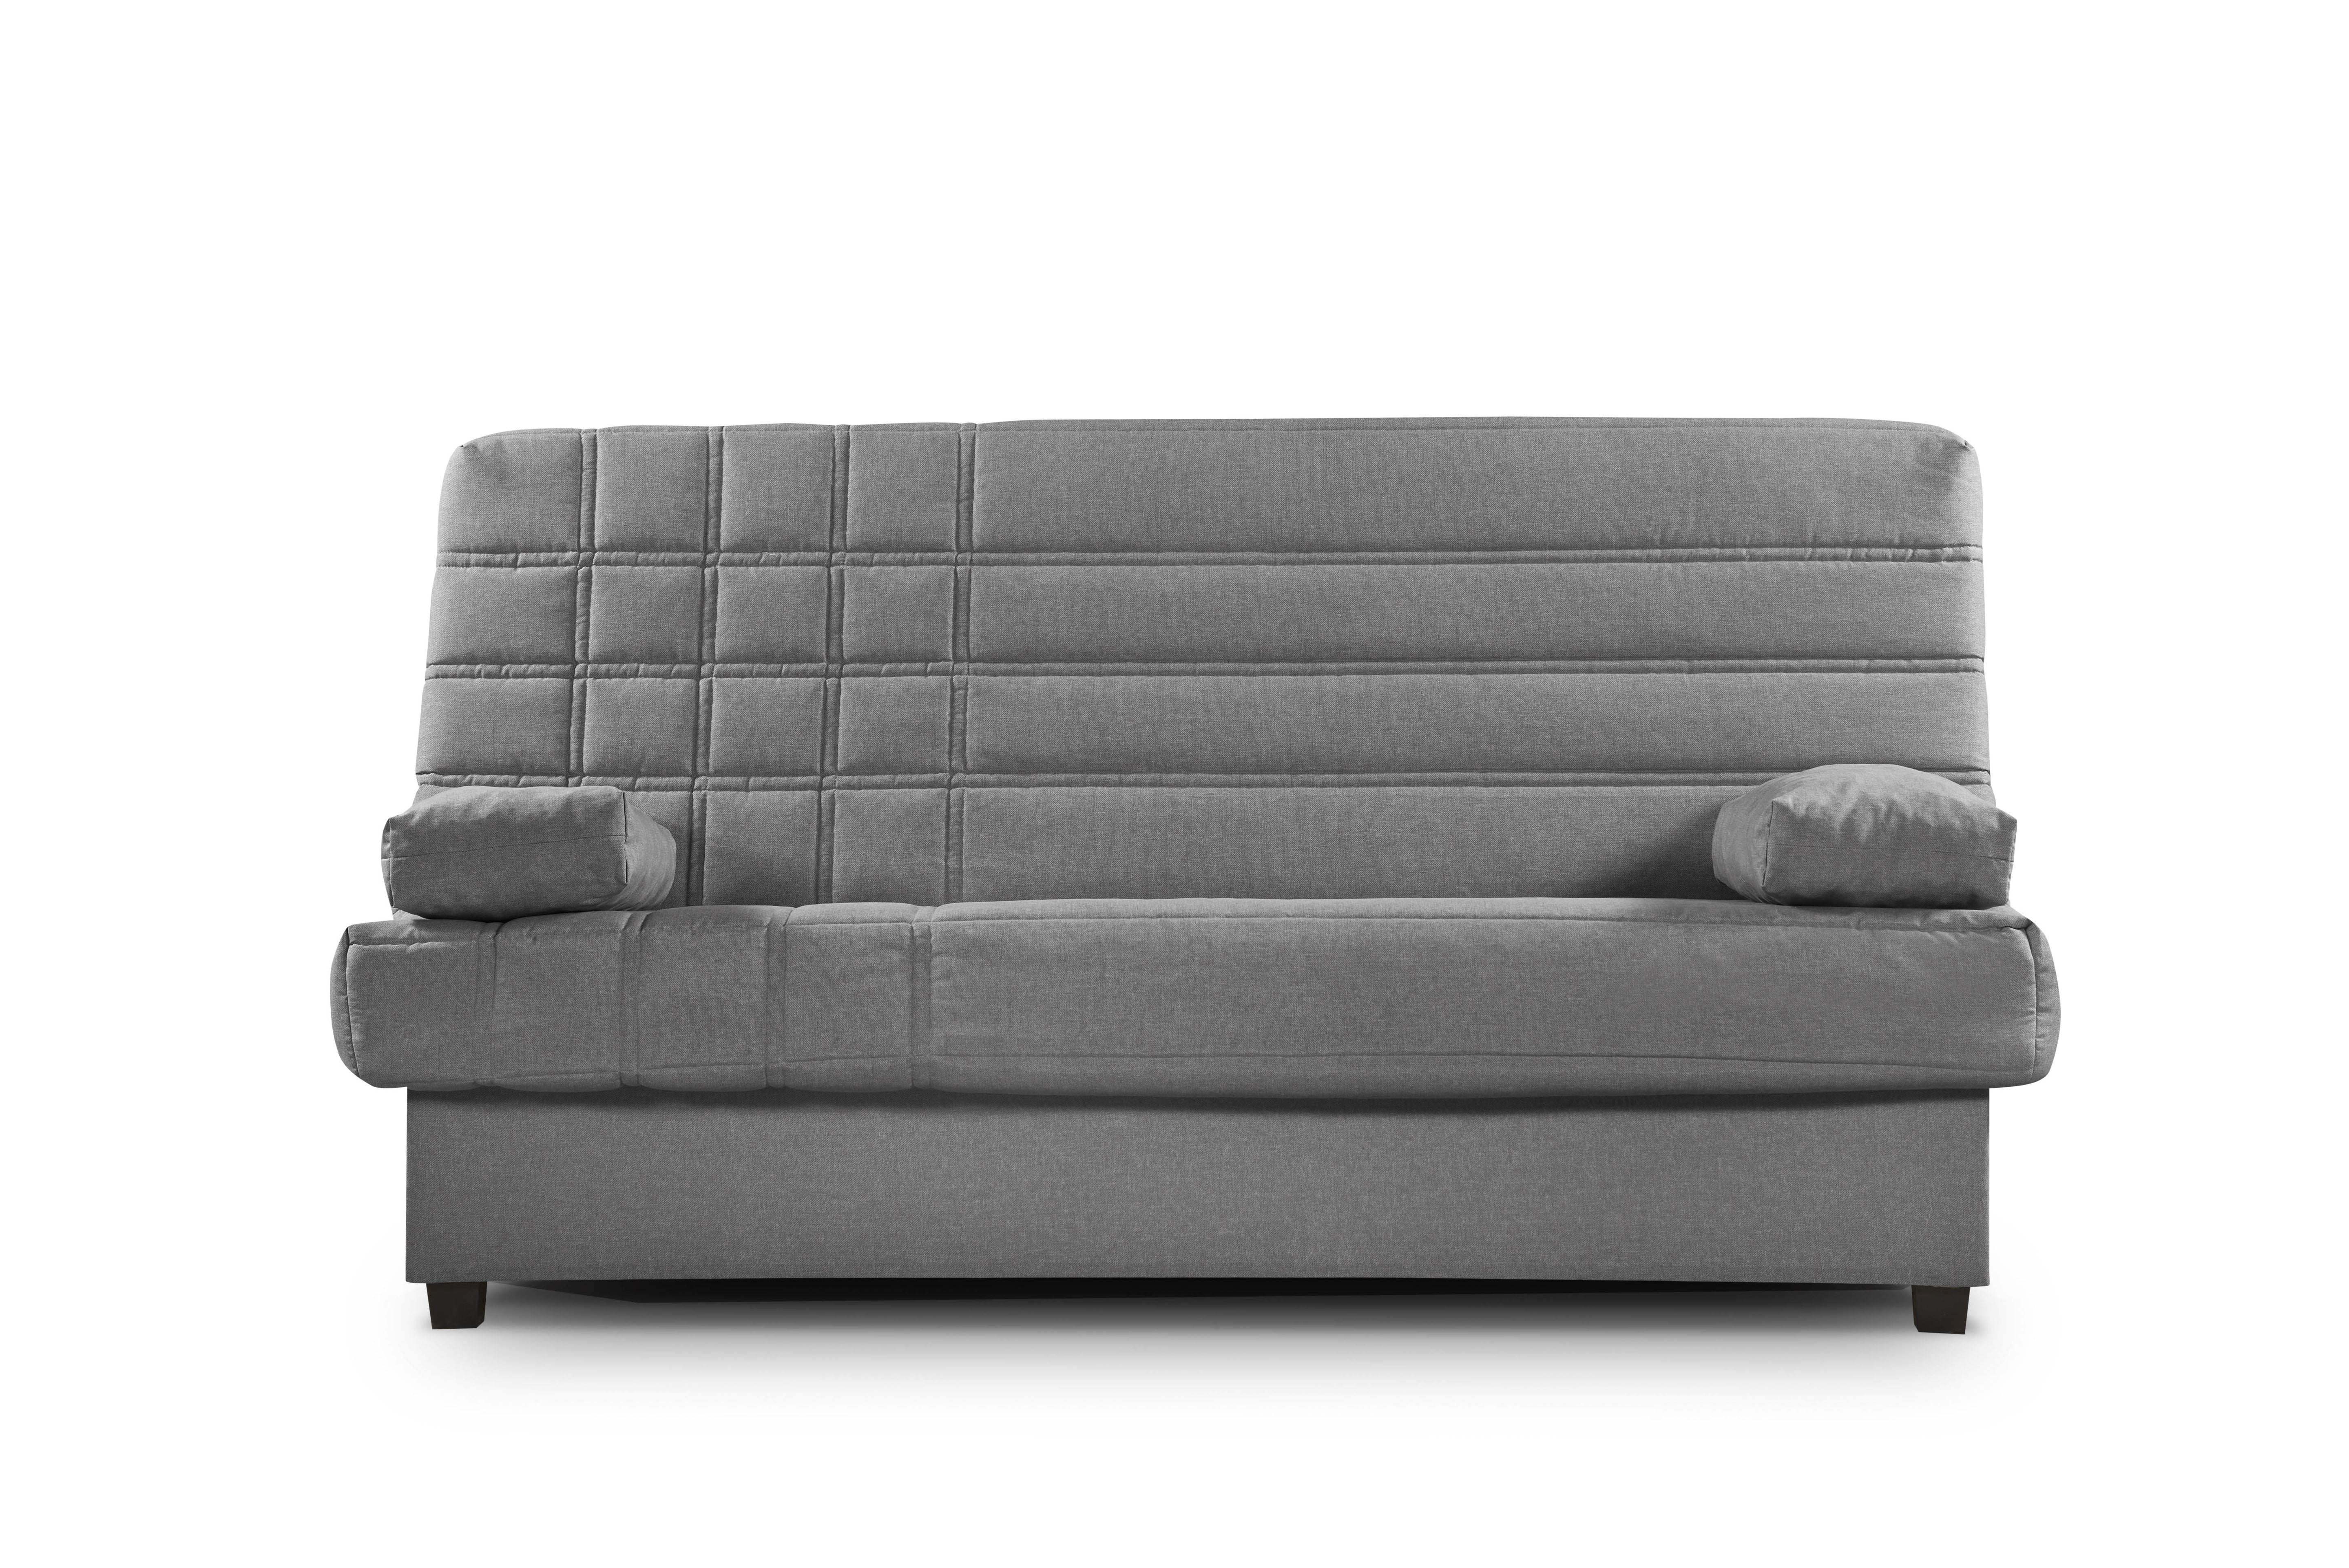 Sofá cama clic clac, tapizado en tejido color gris, funda lavable